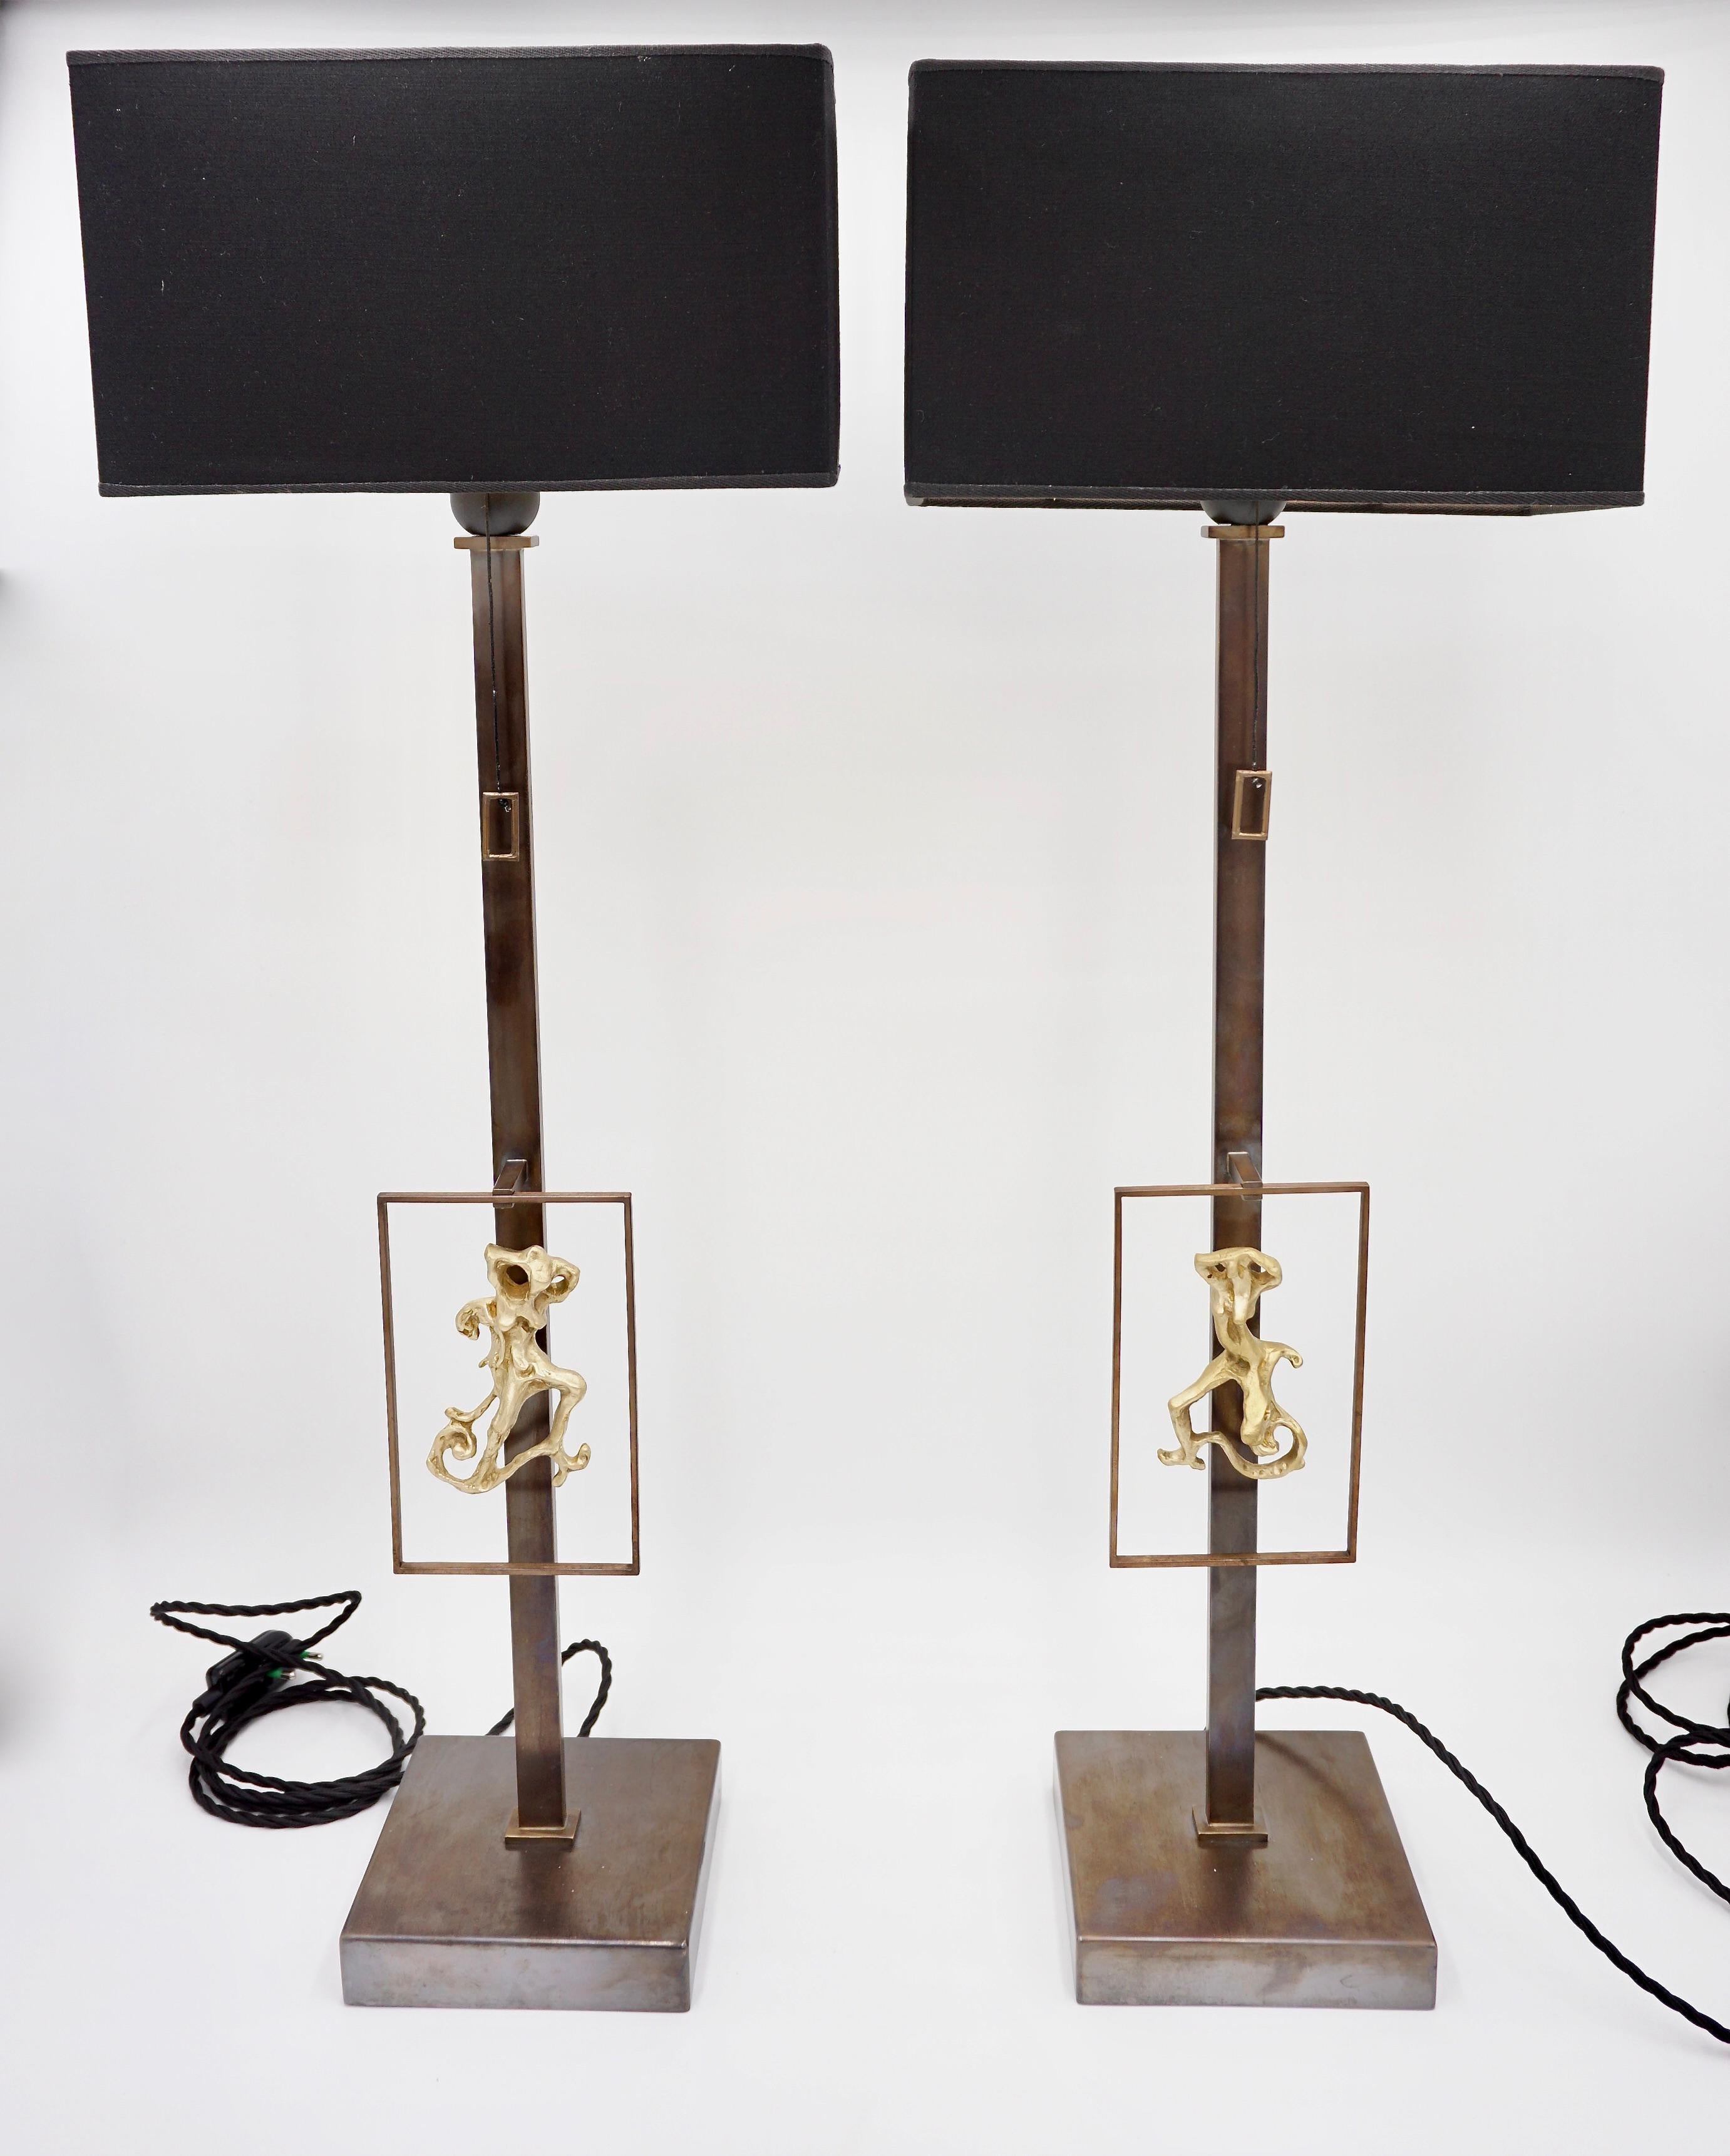 Die Tischlampen von Lorenzo Ciompi für die Serie Masterpieces of Lights